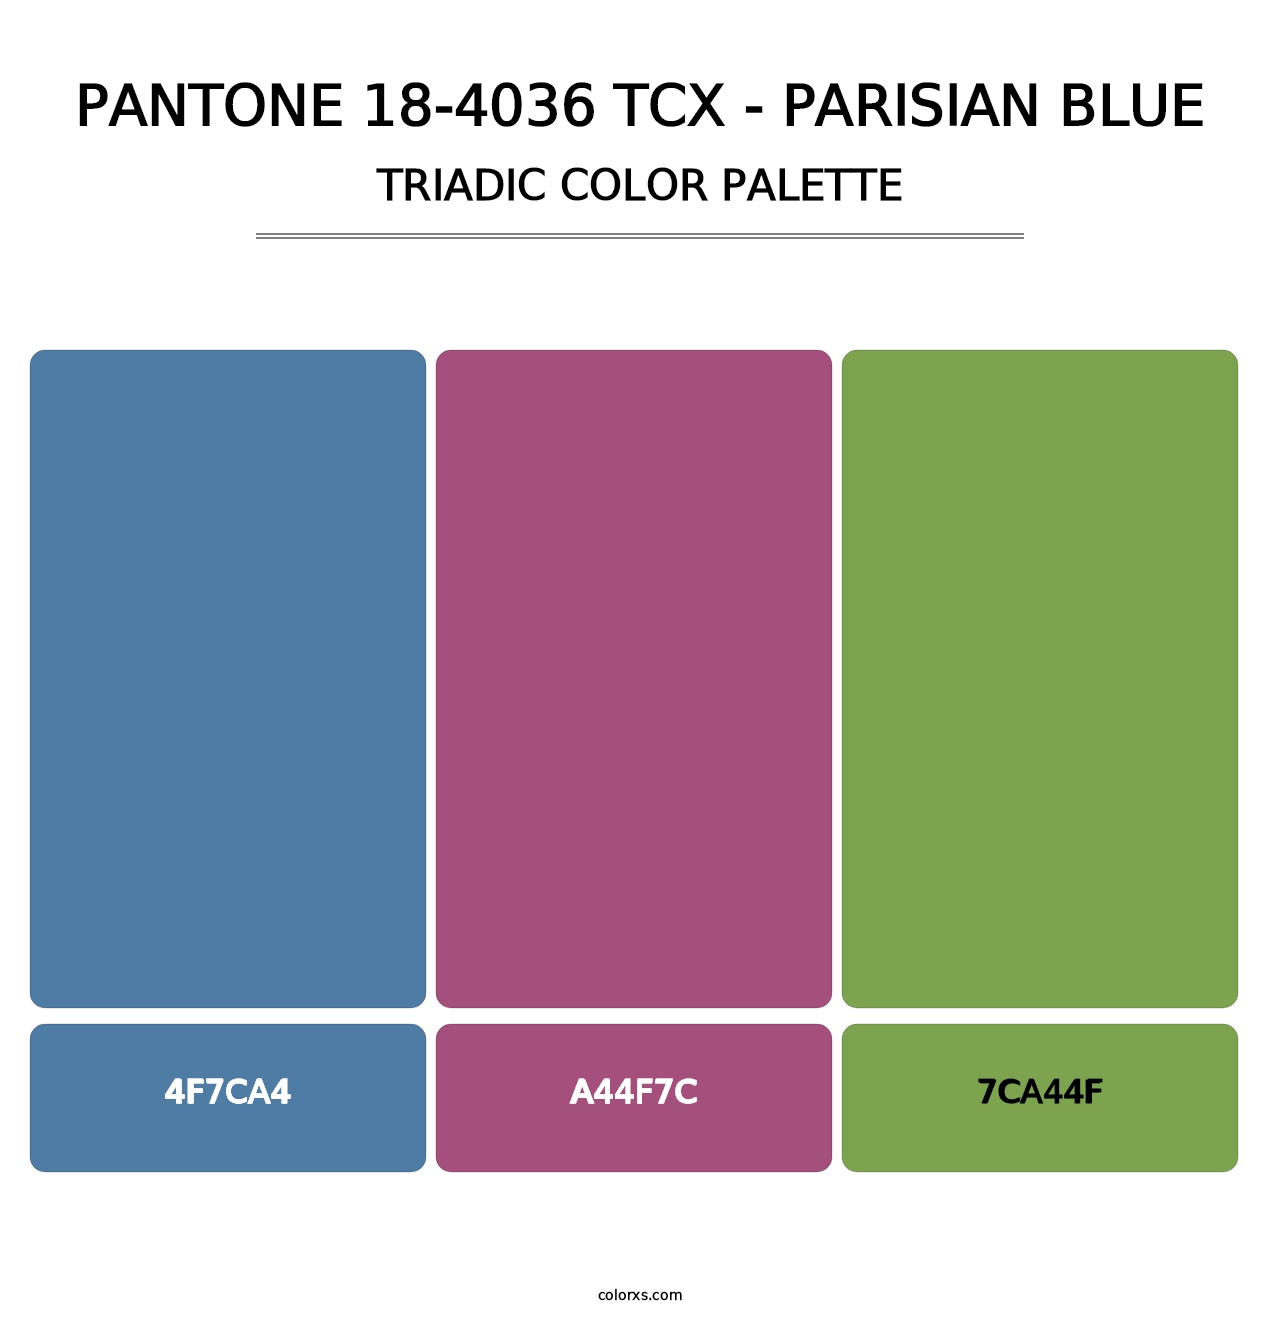 PANTONE 18-4036 TCX - Parisian Blue - Triadic Color Palette